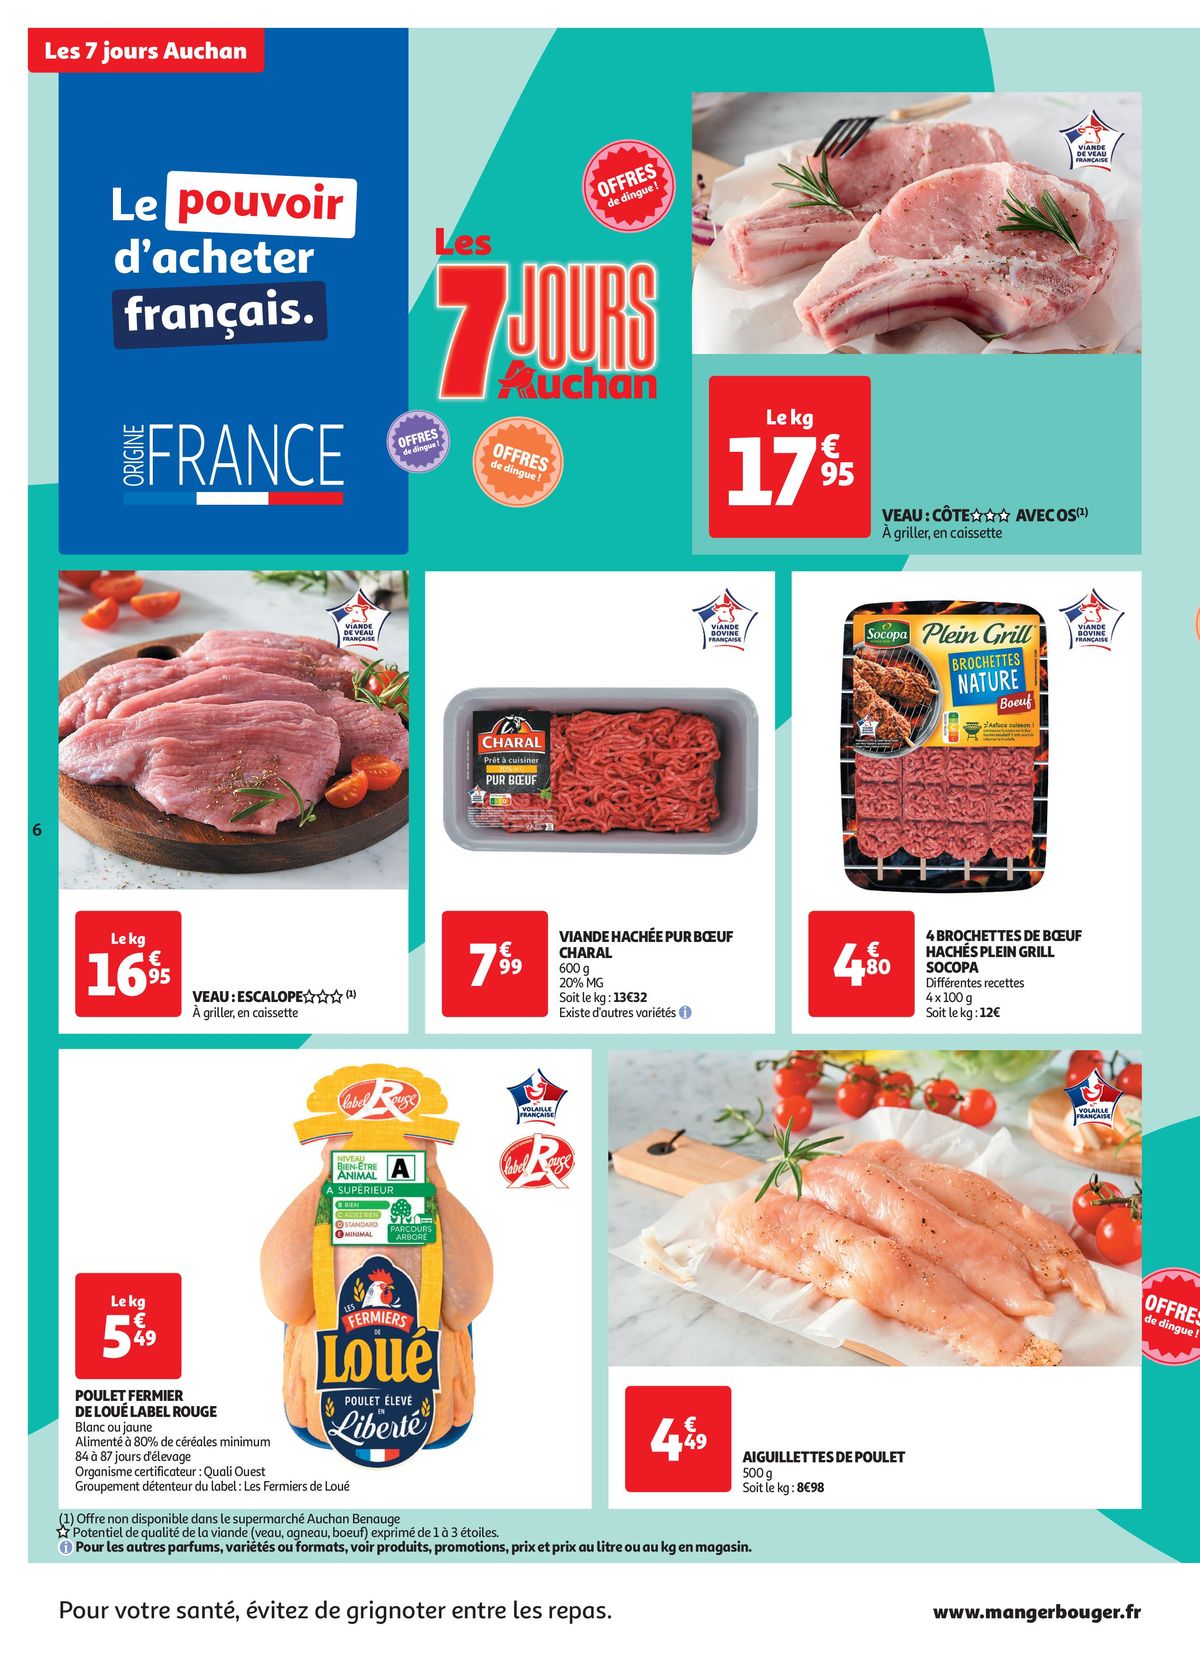 Catalogue C'est les 7 jours Auchan dans votre super !, page 00006